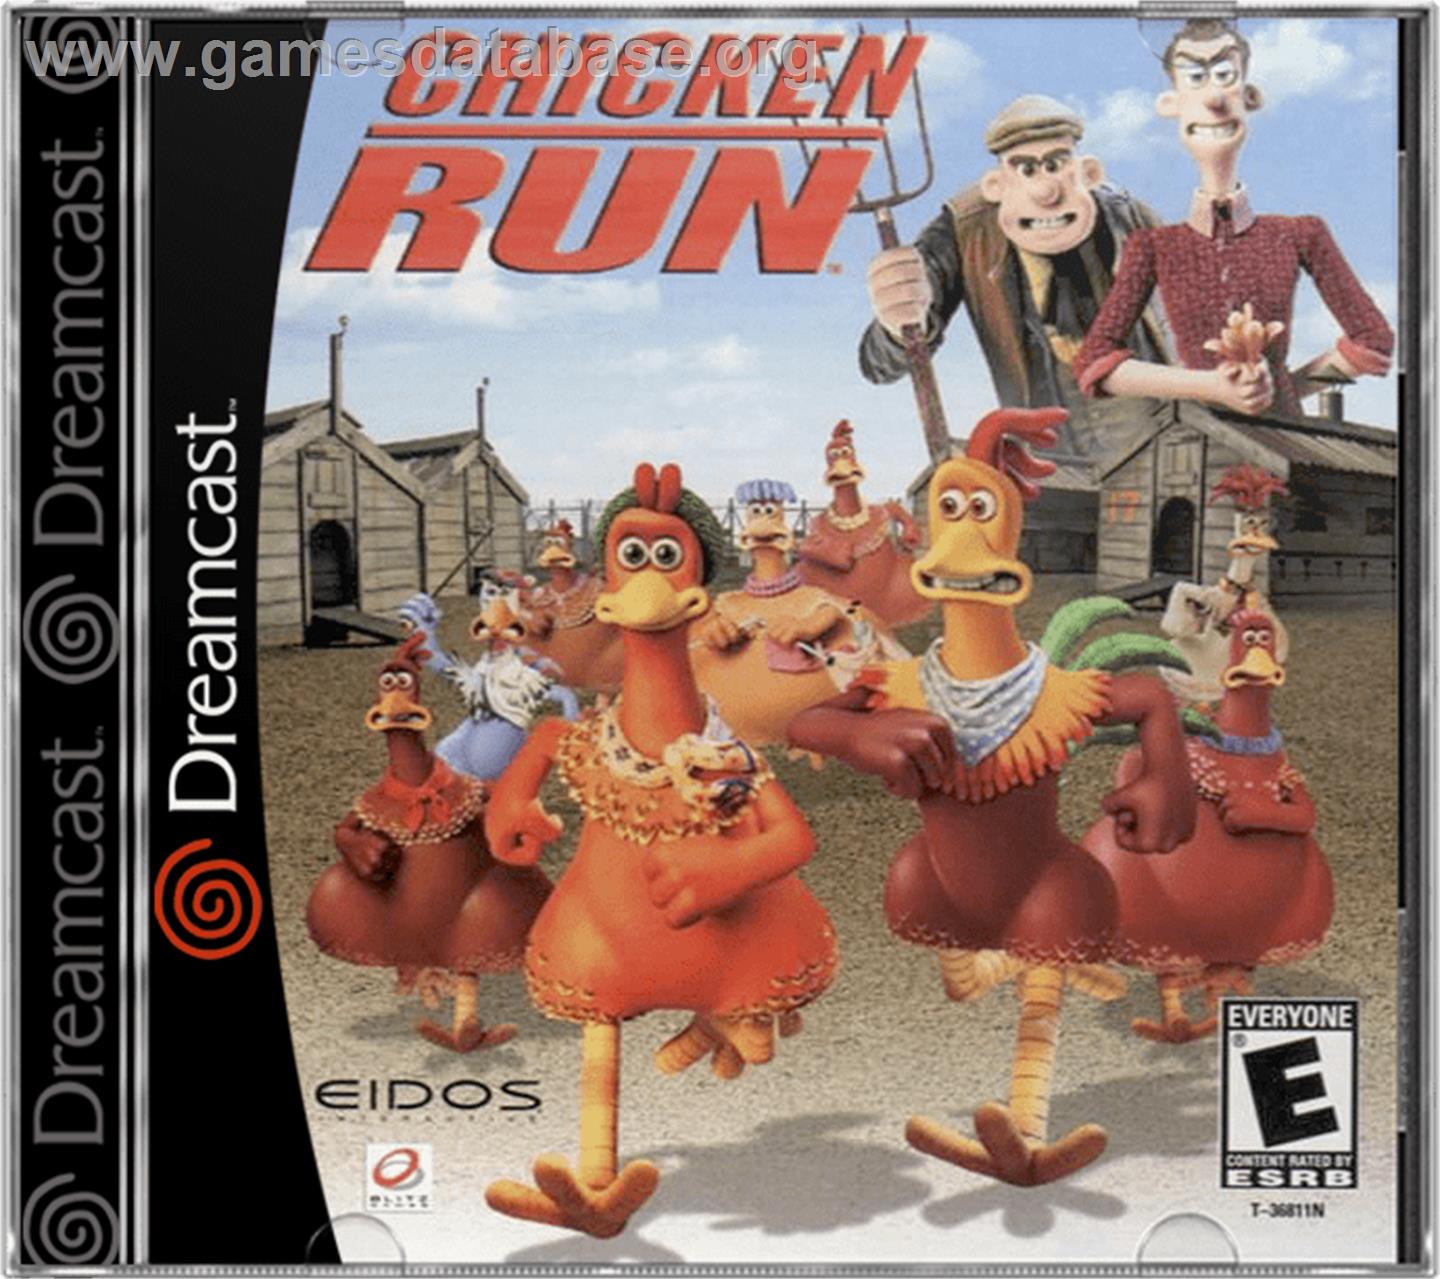 Chicken Run - Sega Dreamcast - Artwork - Box